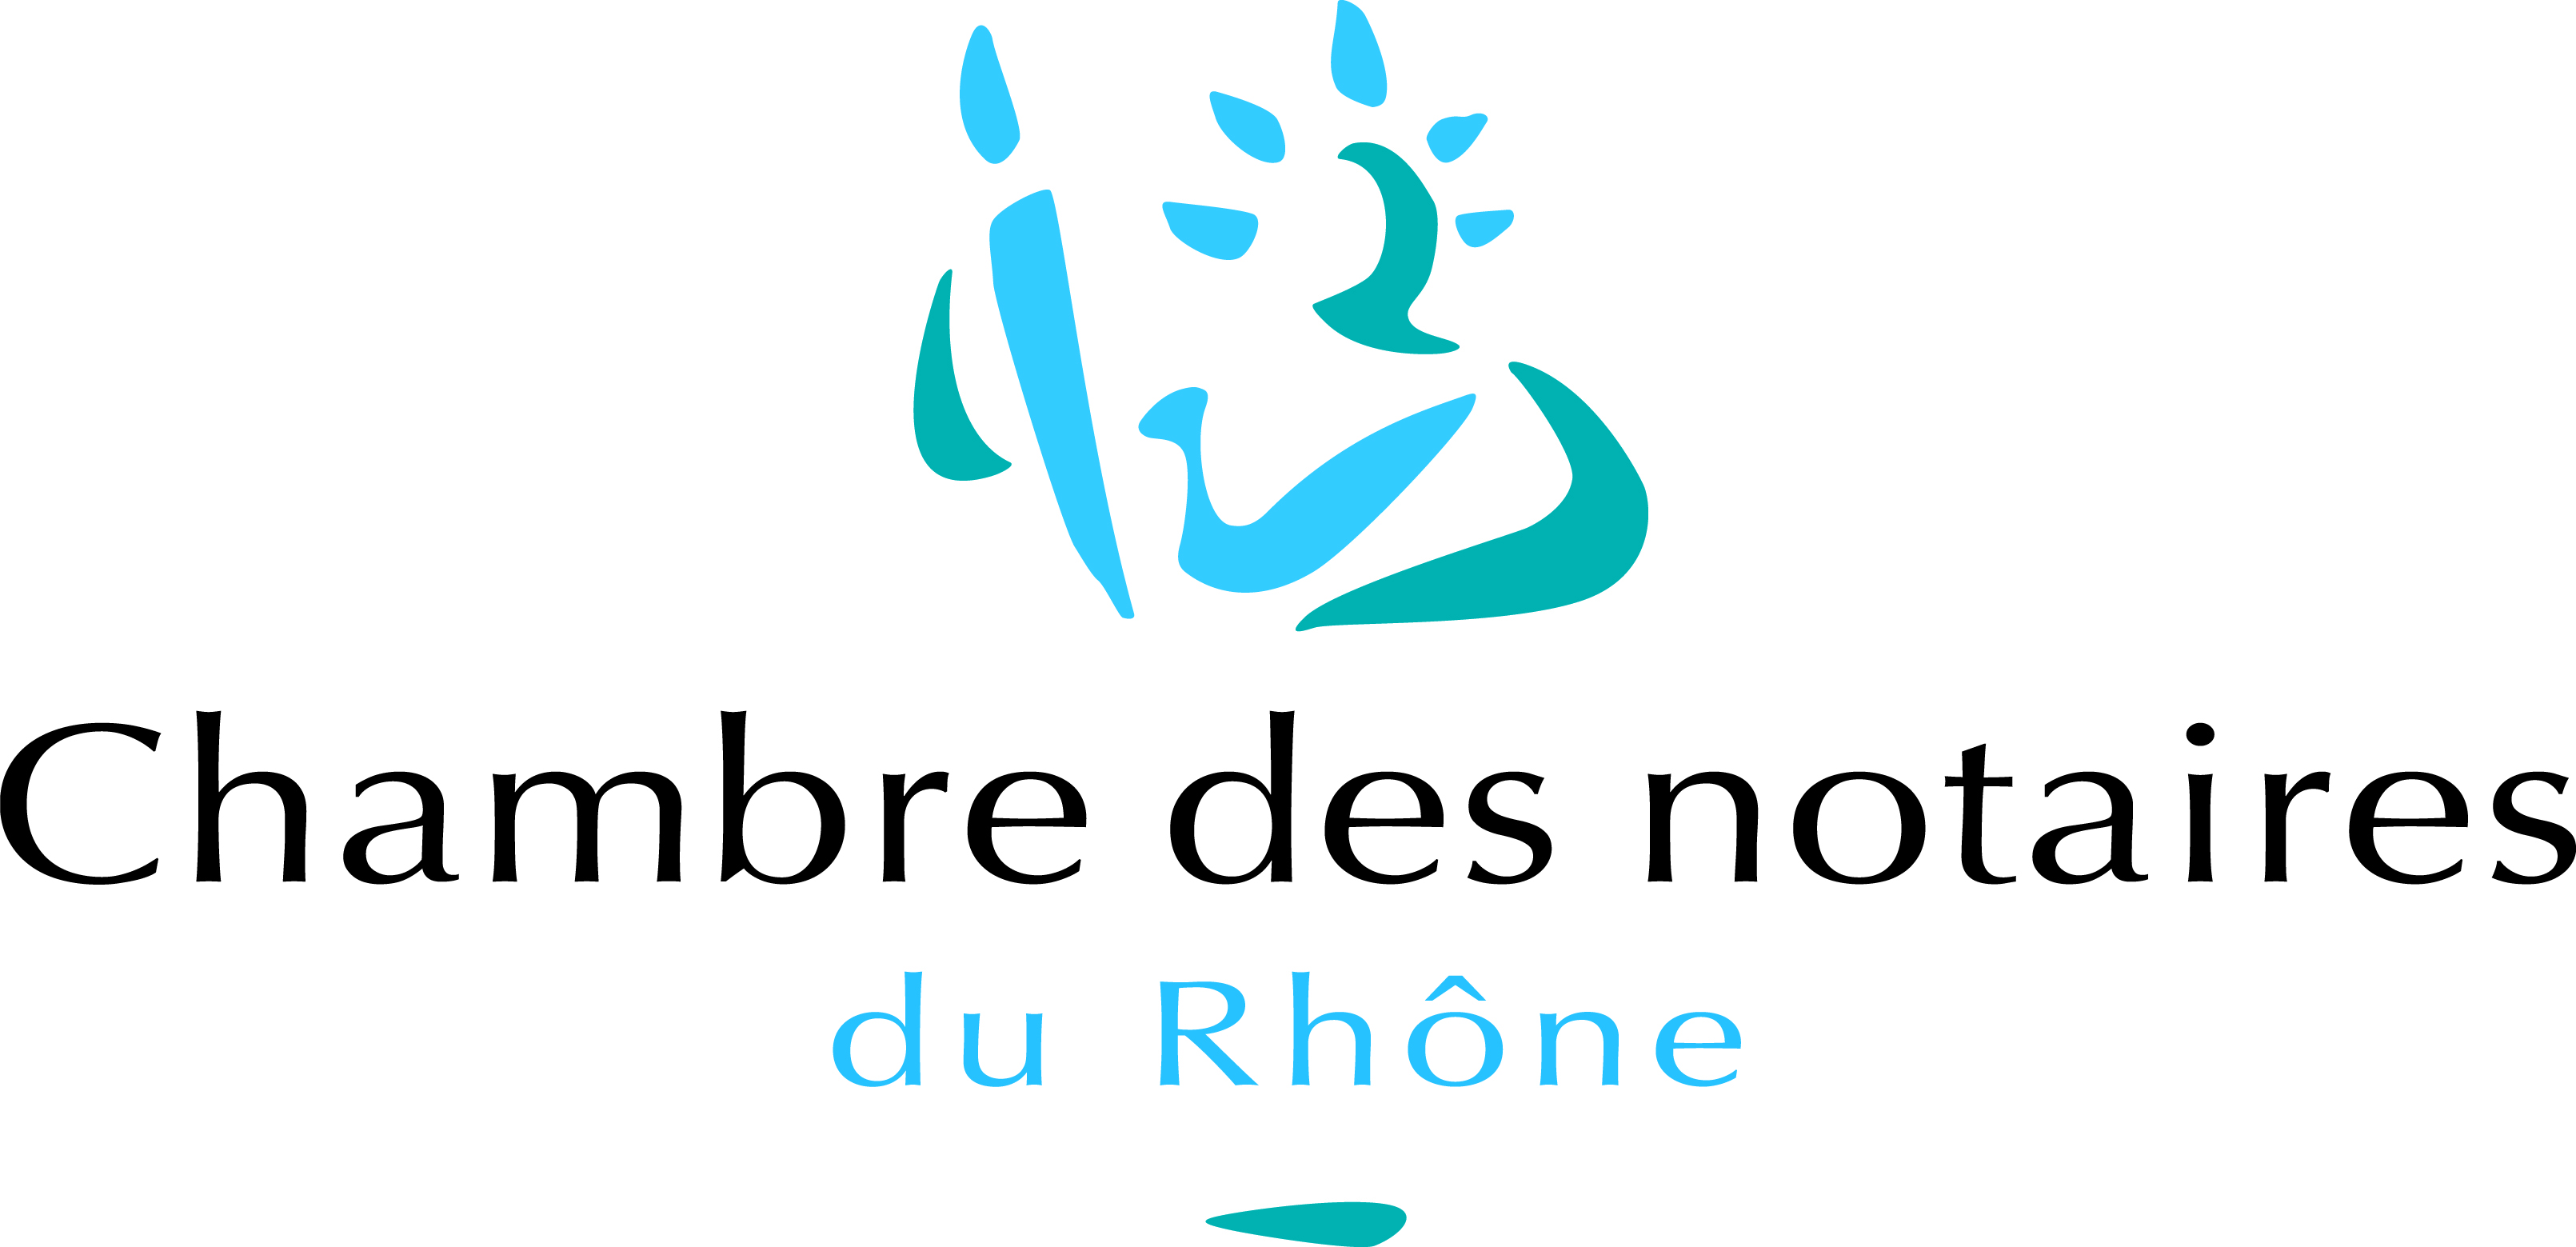 Chambre des notaires du Rhône